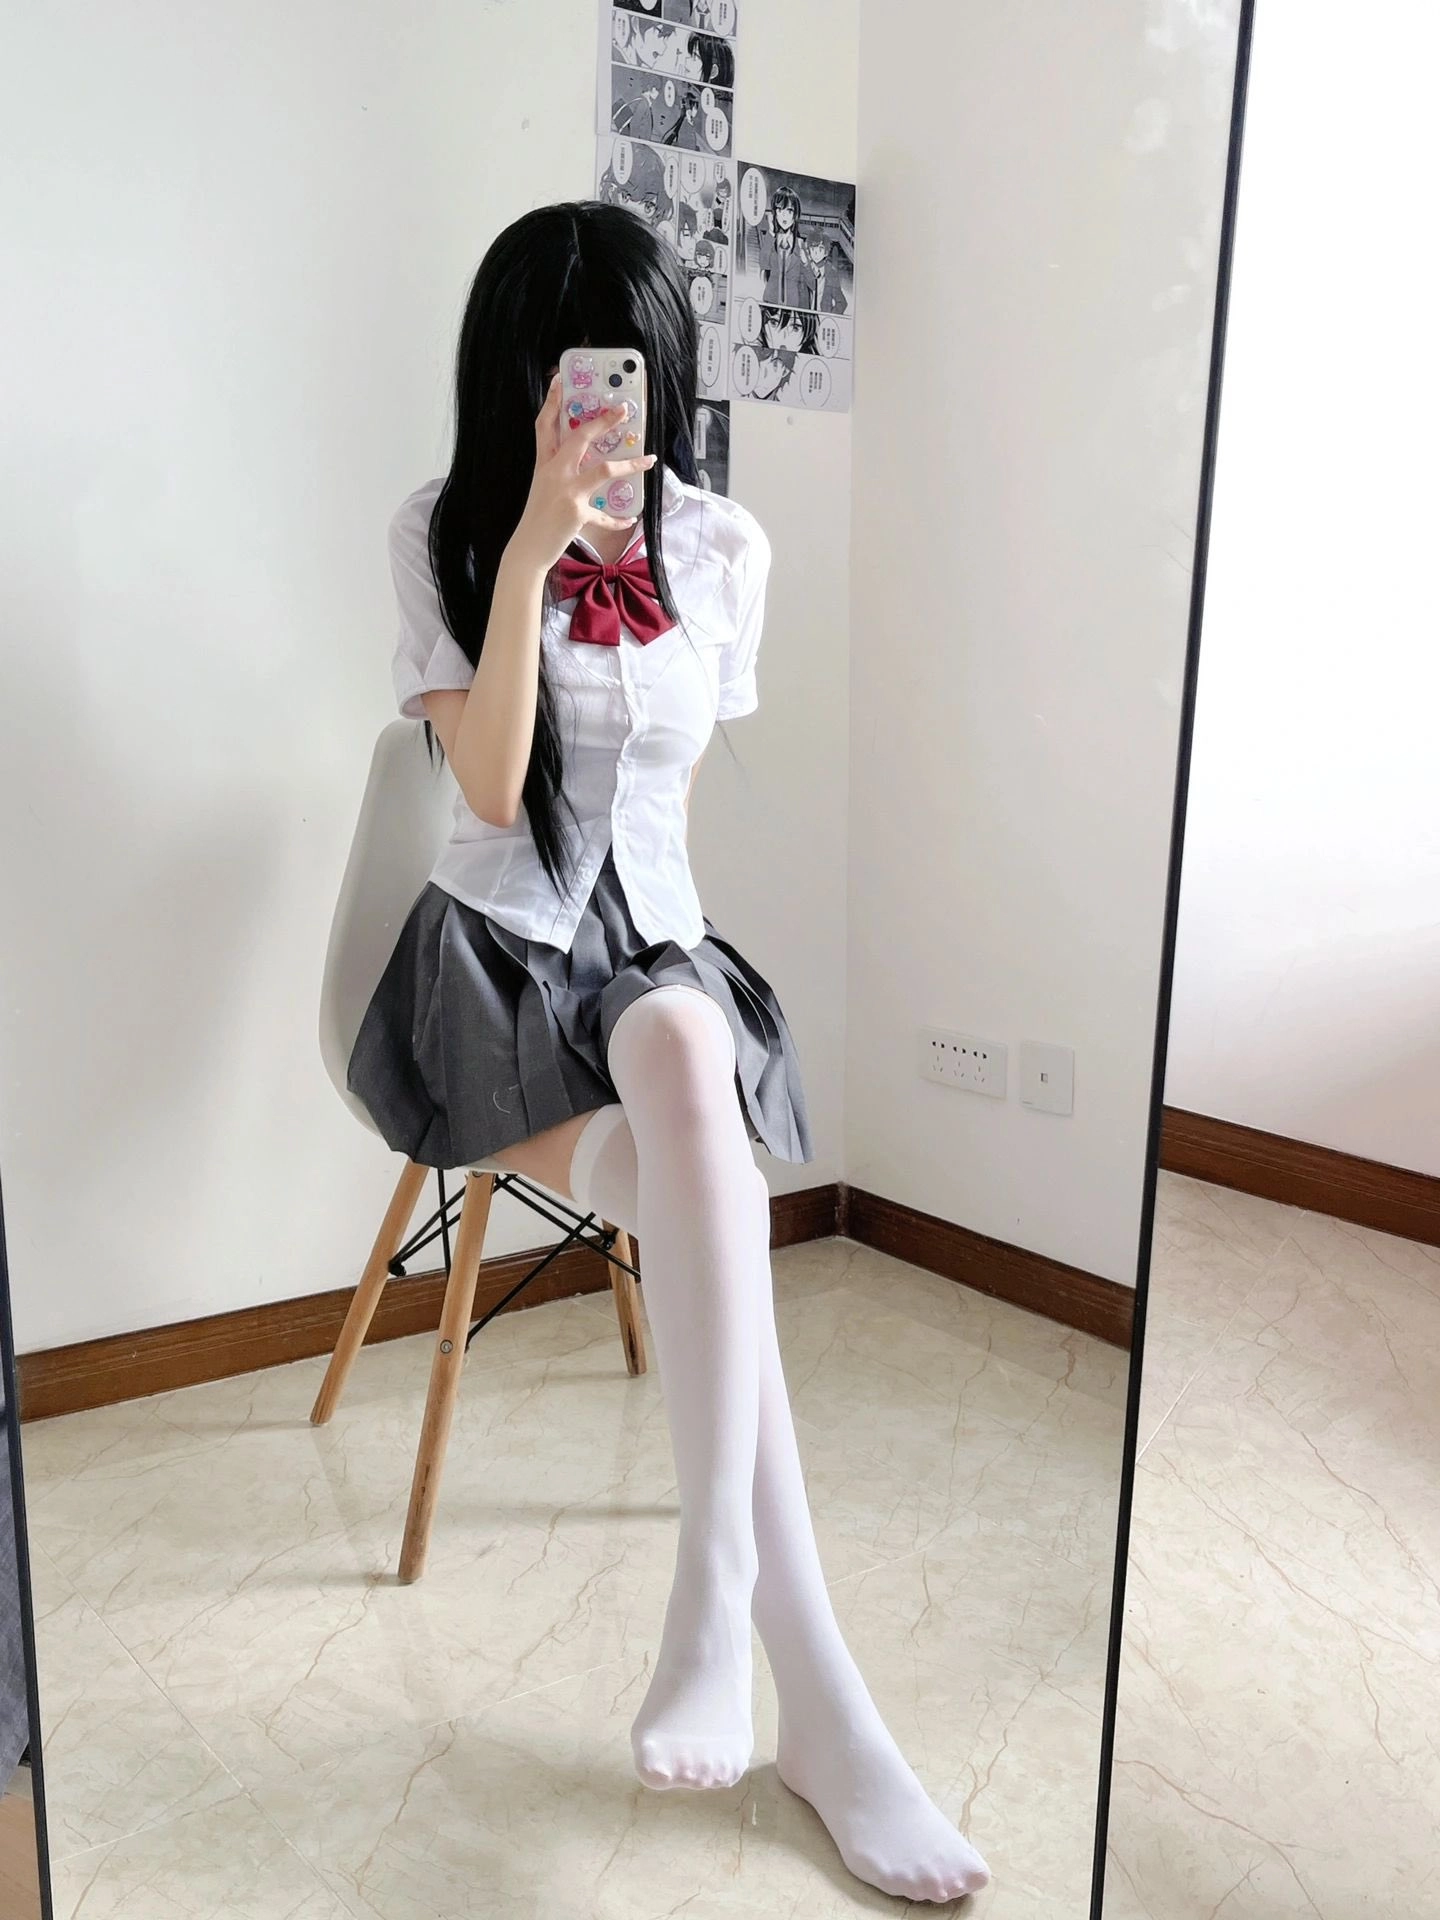 White stockings 足控: Adolesen yang tertarik atau tertarik secara seksual pada kaki atau kegiatan terkait kaki.